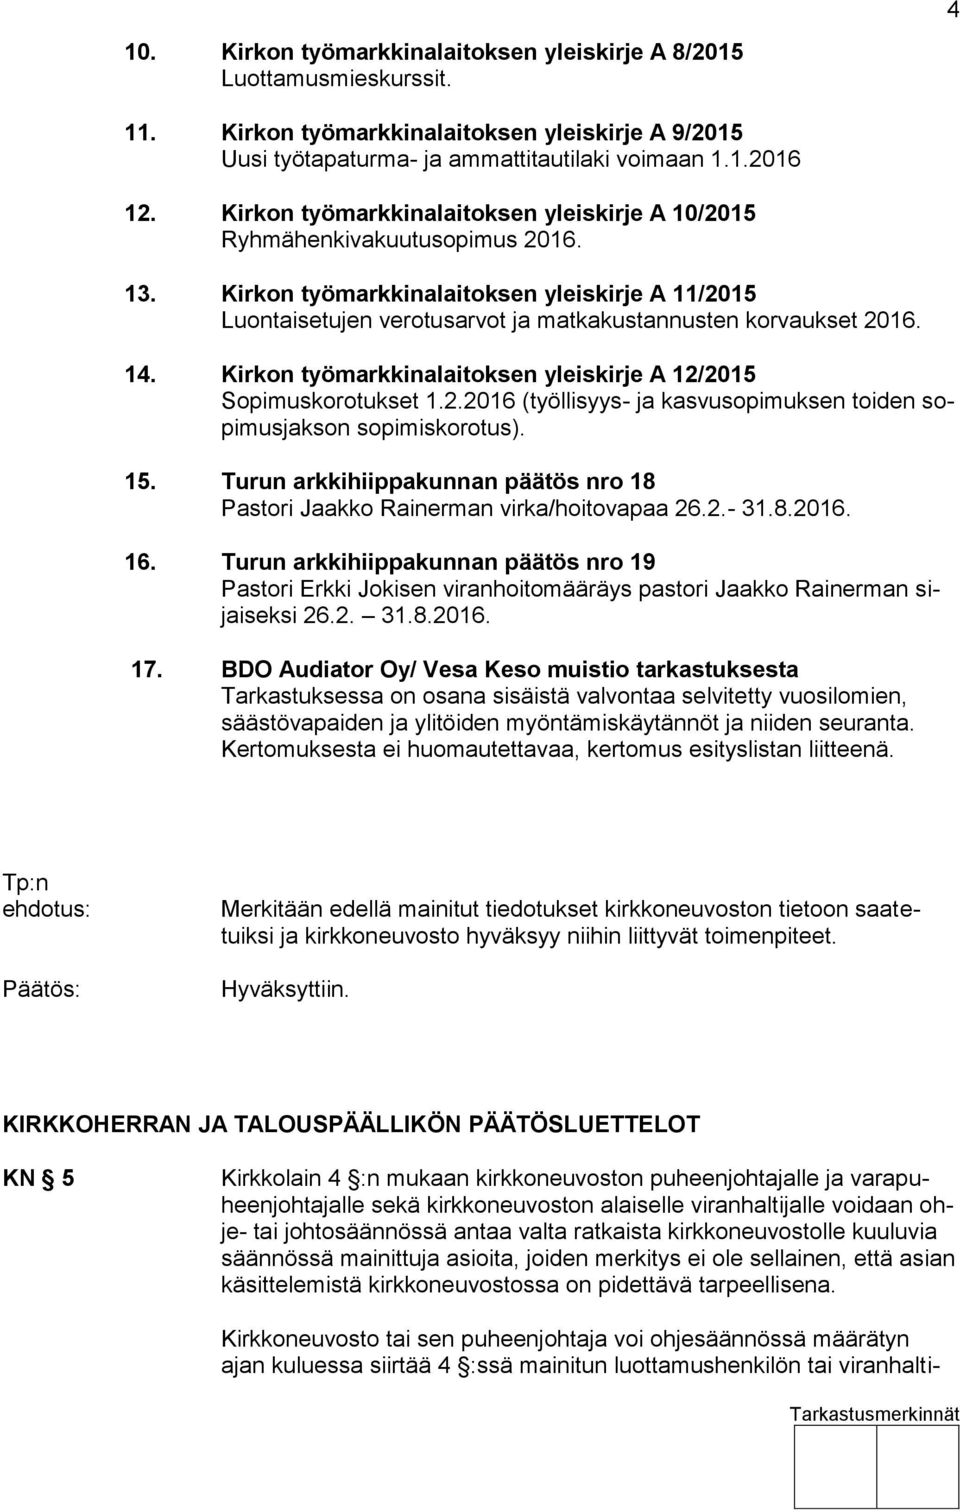 14. Kirkon työmarkkinalaitoksen yleiskirje A 12/2015 Sopimuskorotukset 1.2.2016 (työllisyys- ja kasvusopimuksen toiden sopimusjakson sopimiskorotus). 15.